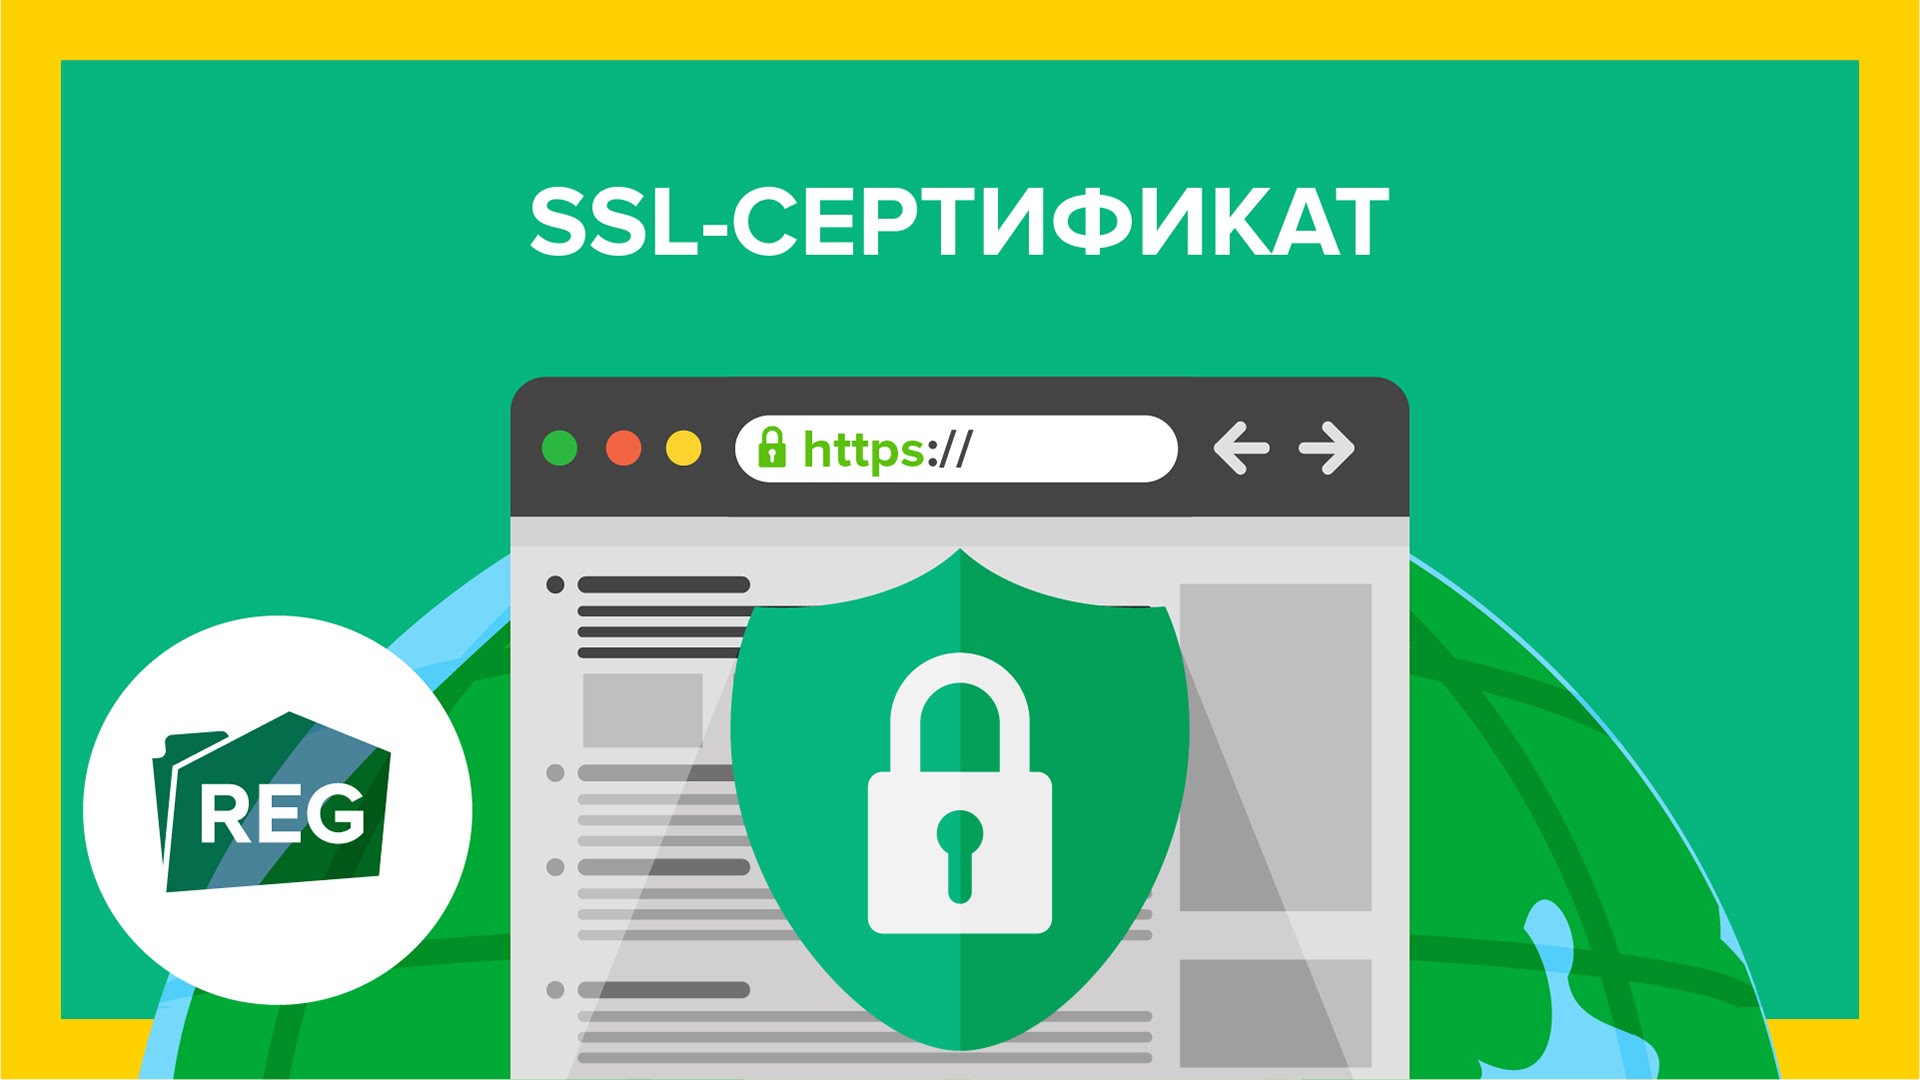 Виды SSL сертификатов. Что необходимо о них знать